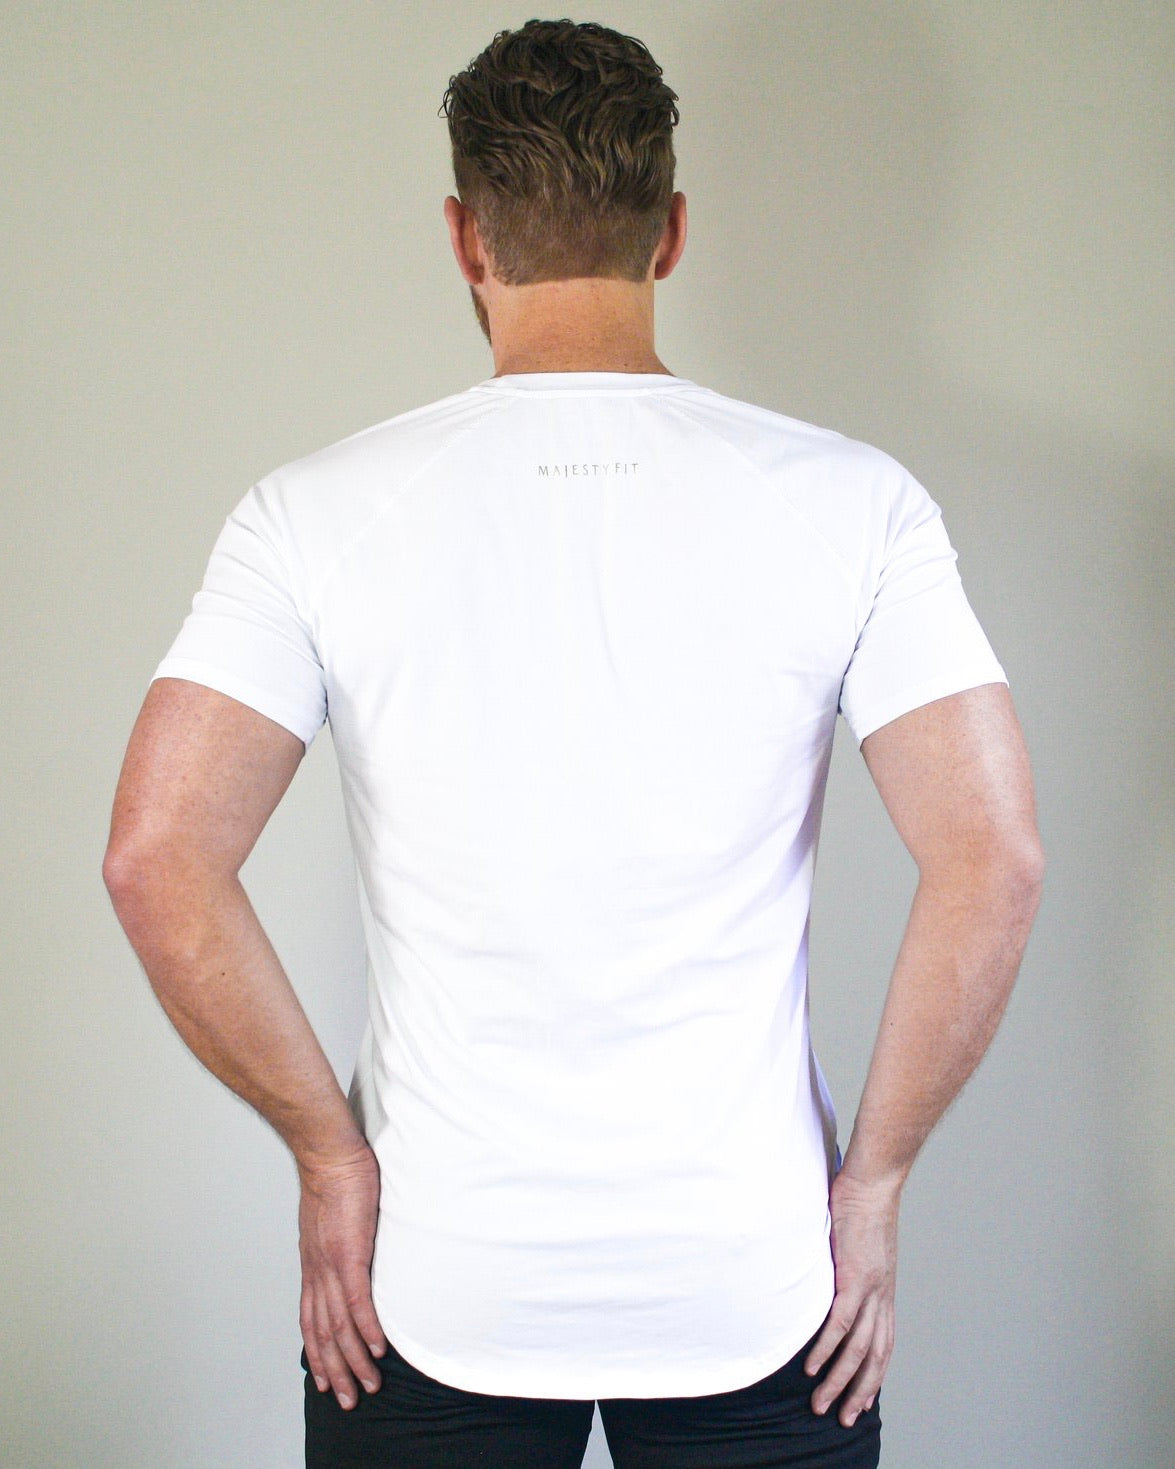 Tunic Performance Shirt - White